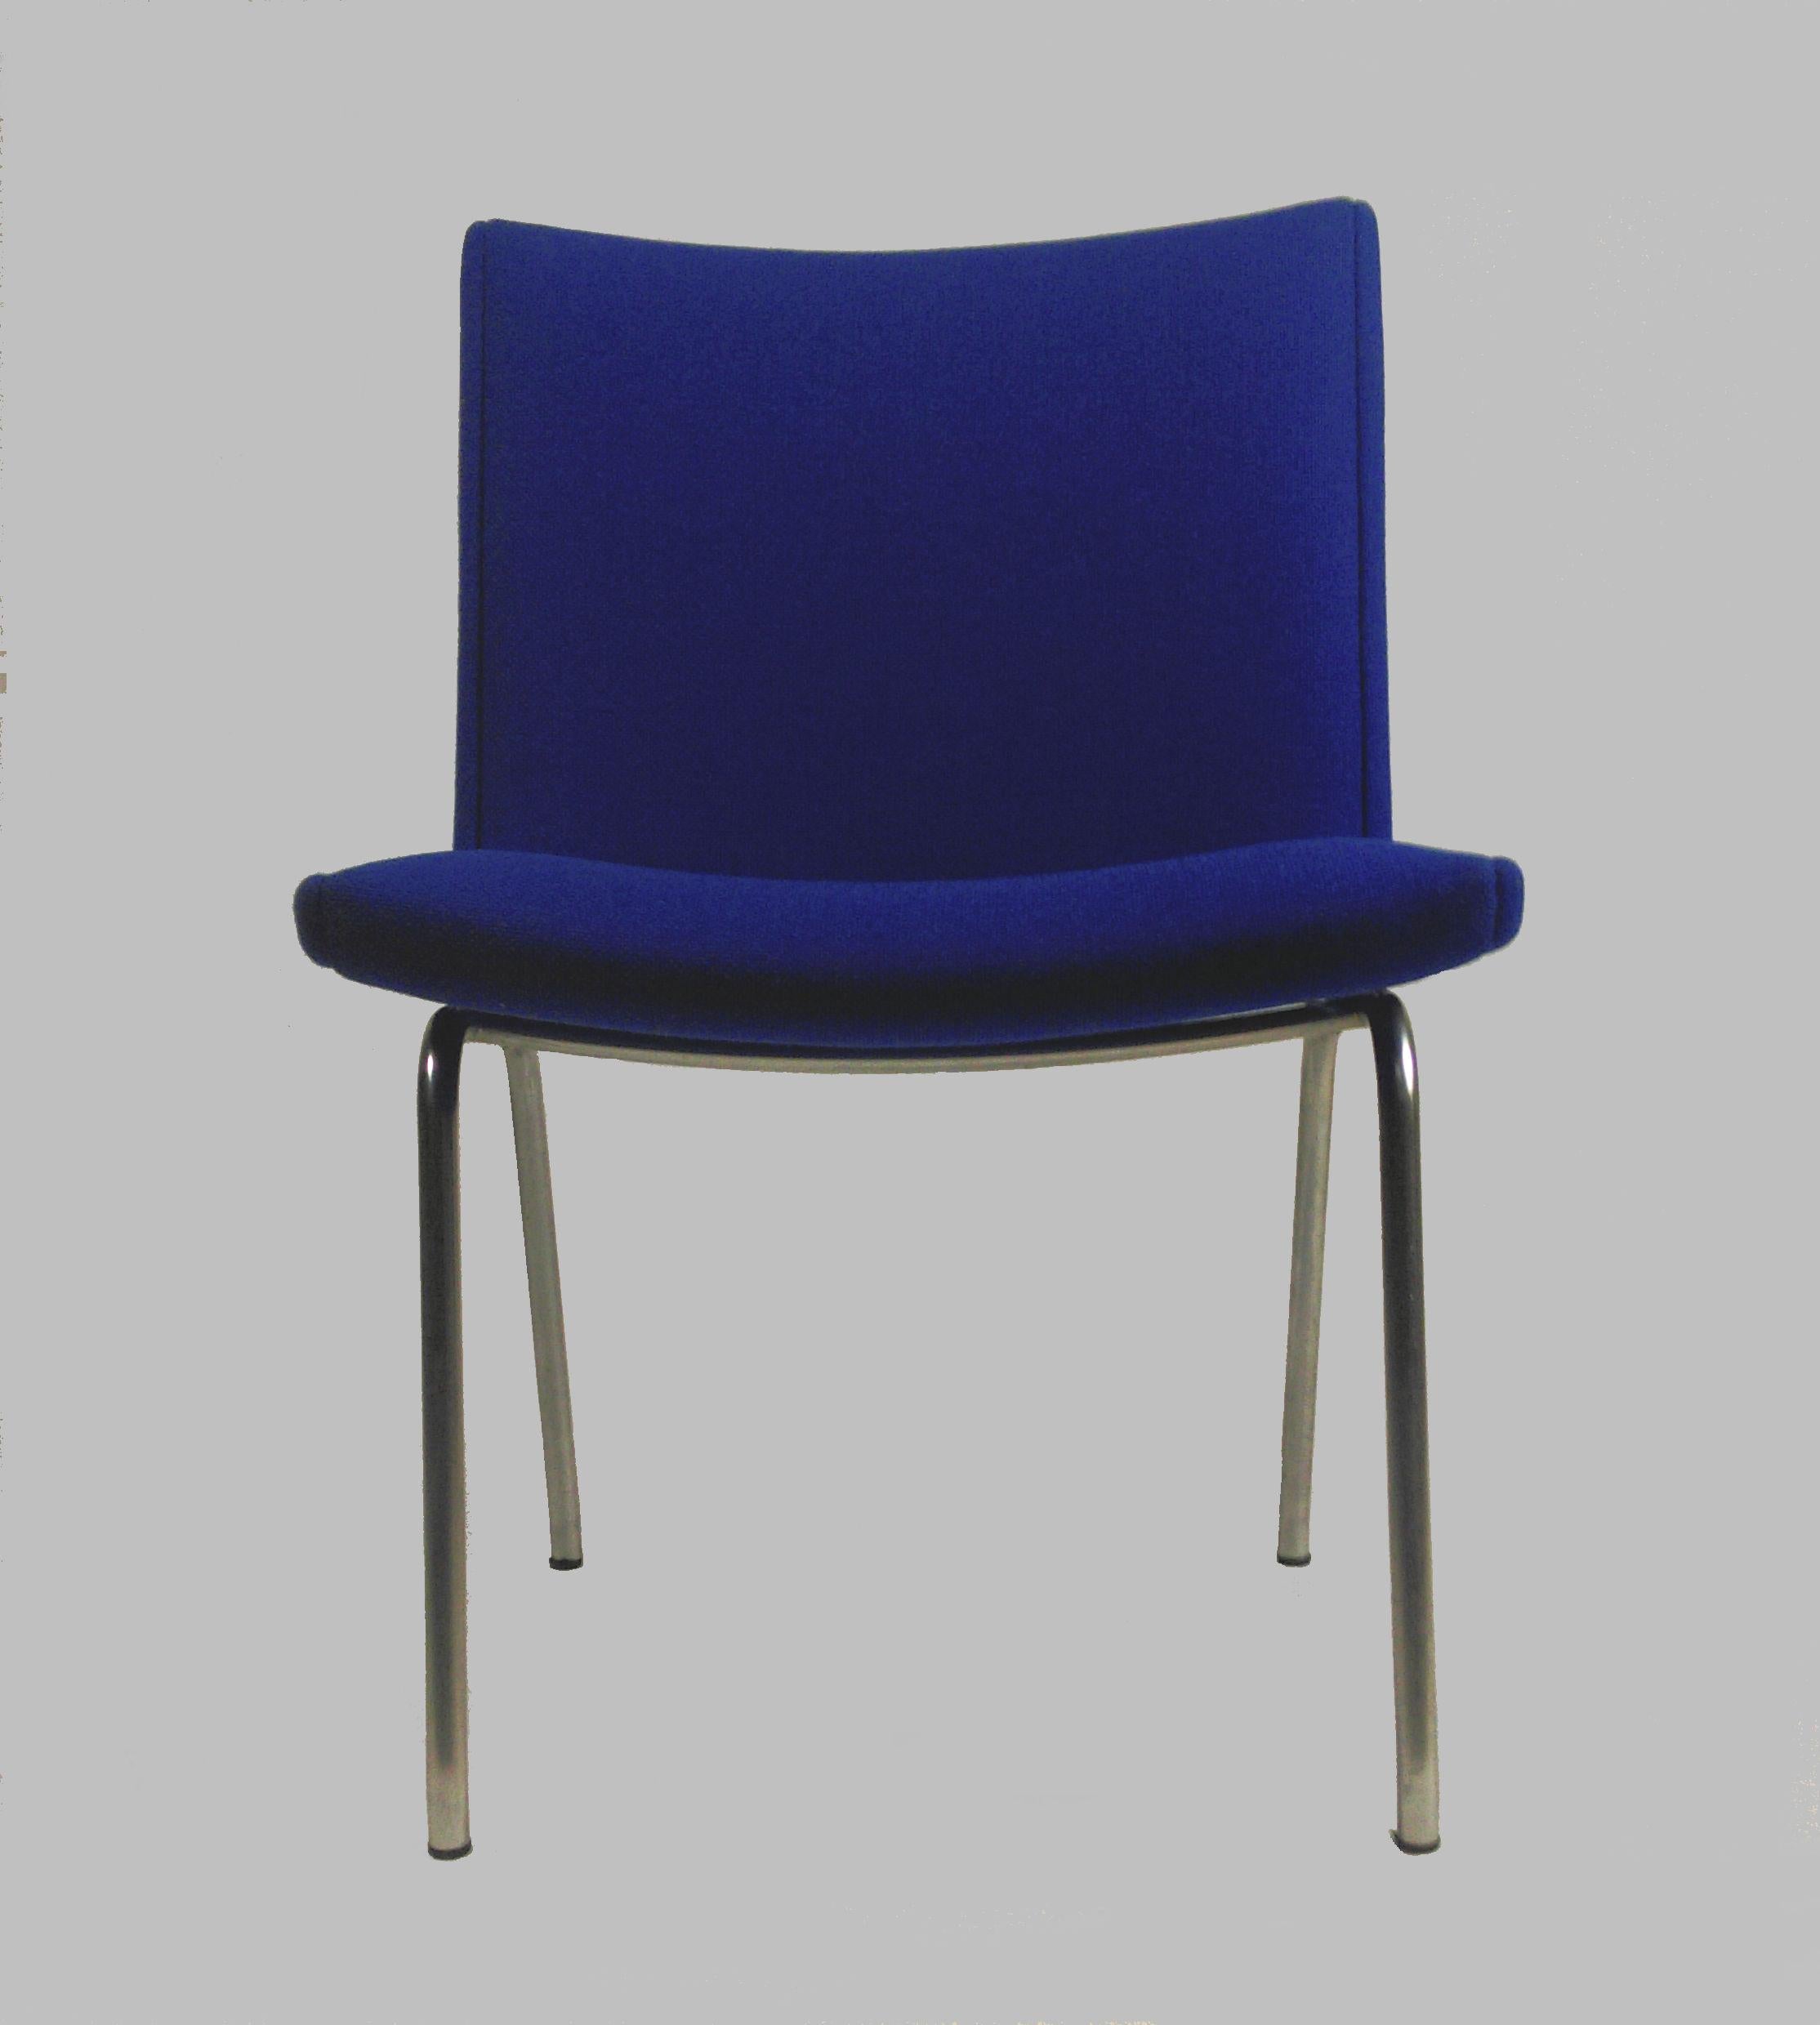 Rare ensemble de 12 chaises longues Hans Wegner AP38 'Airport' par A.P. Volé, Danemark.

Ces chaises modernes exceptionnelles ont été conçues en 1958, sur des cadres en acier tubulaire avec des détails en forme de boomerang triangulaire pointu sur